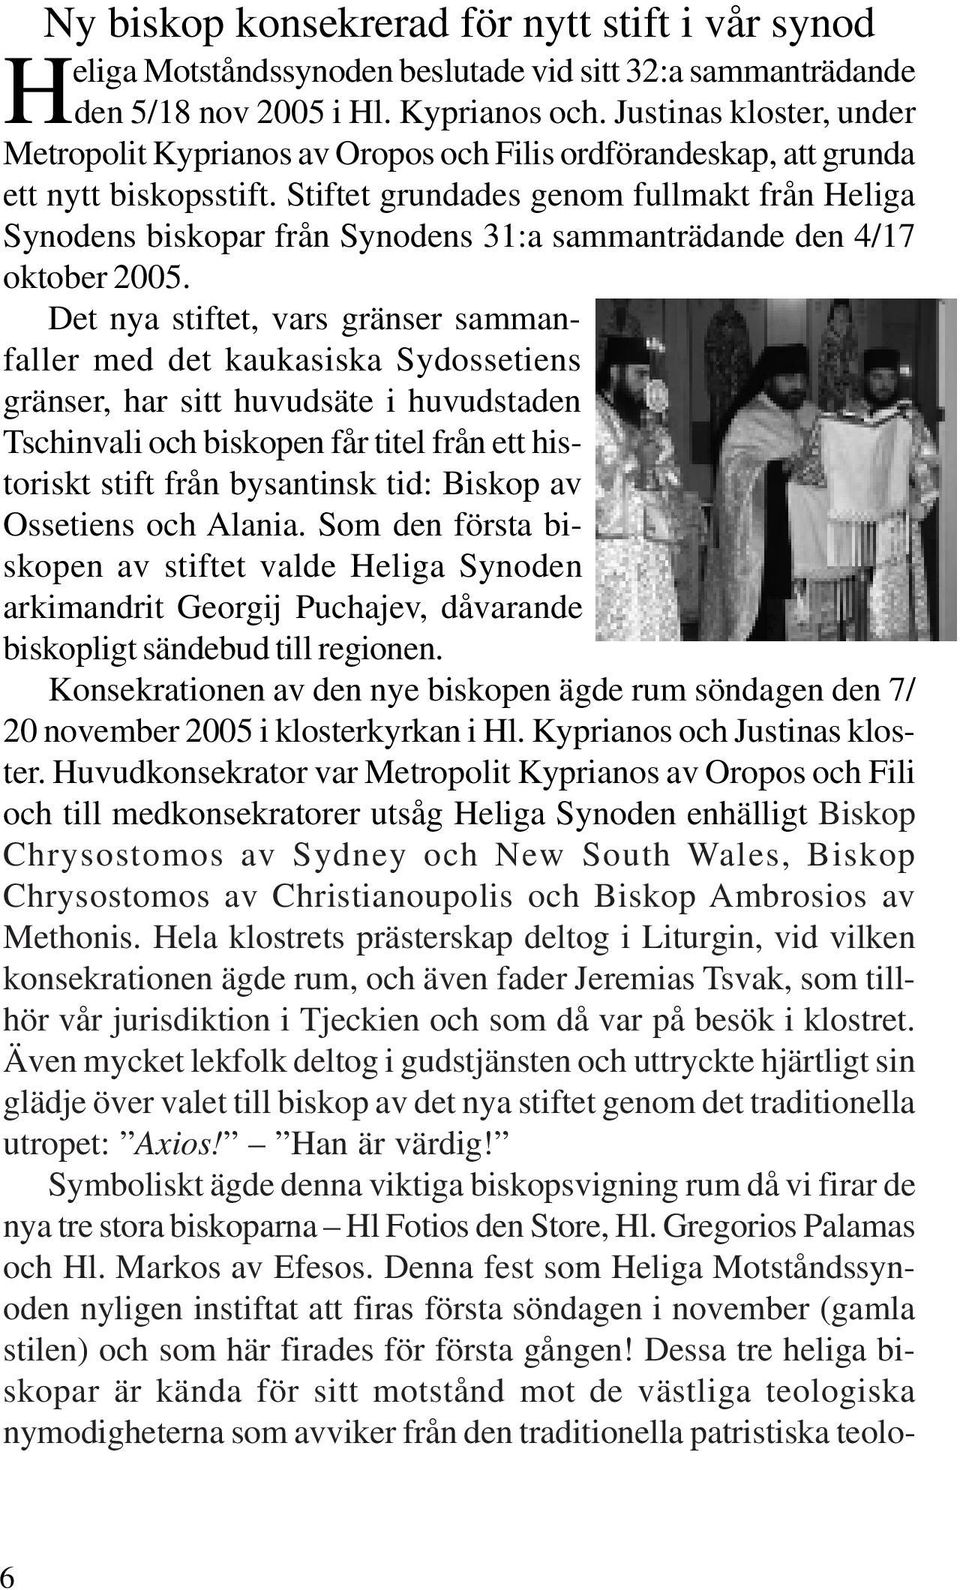 Stiftet grundades genom fullmakt från Heliga Synodens biskopar från Synodens 31:a sammanträdande den 4/17 oktober 2005.